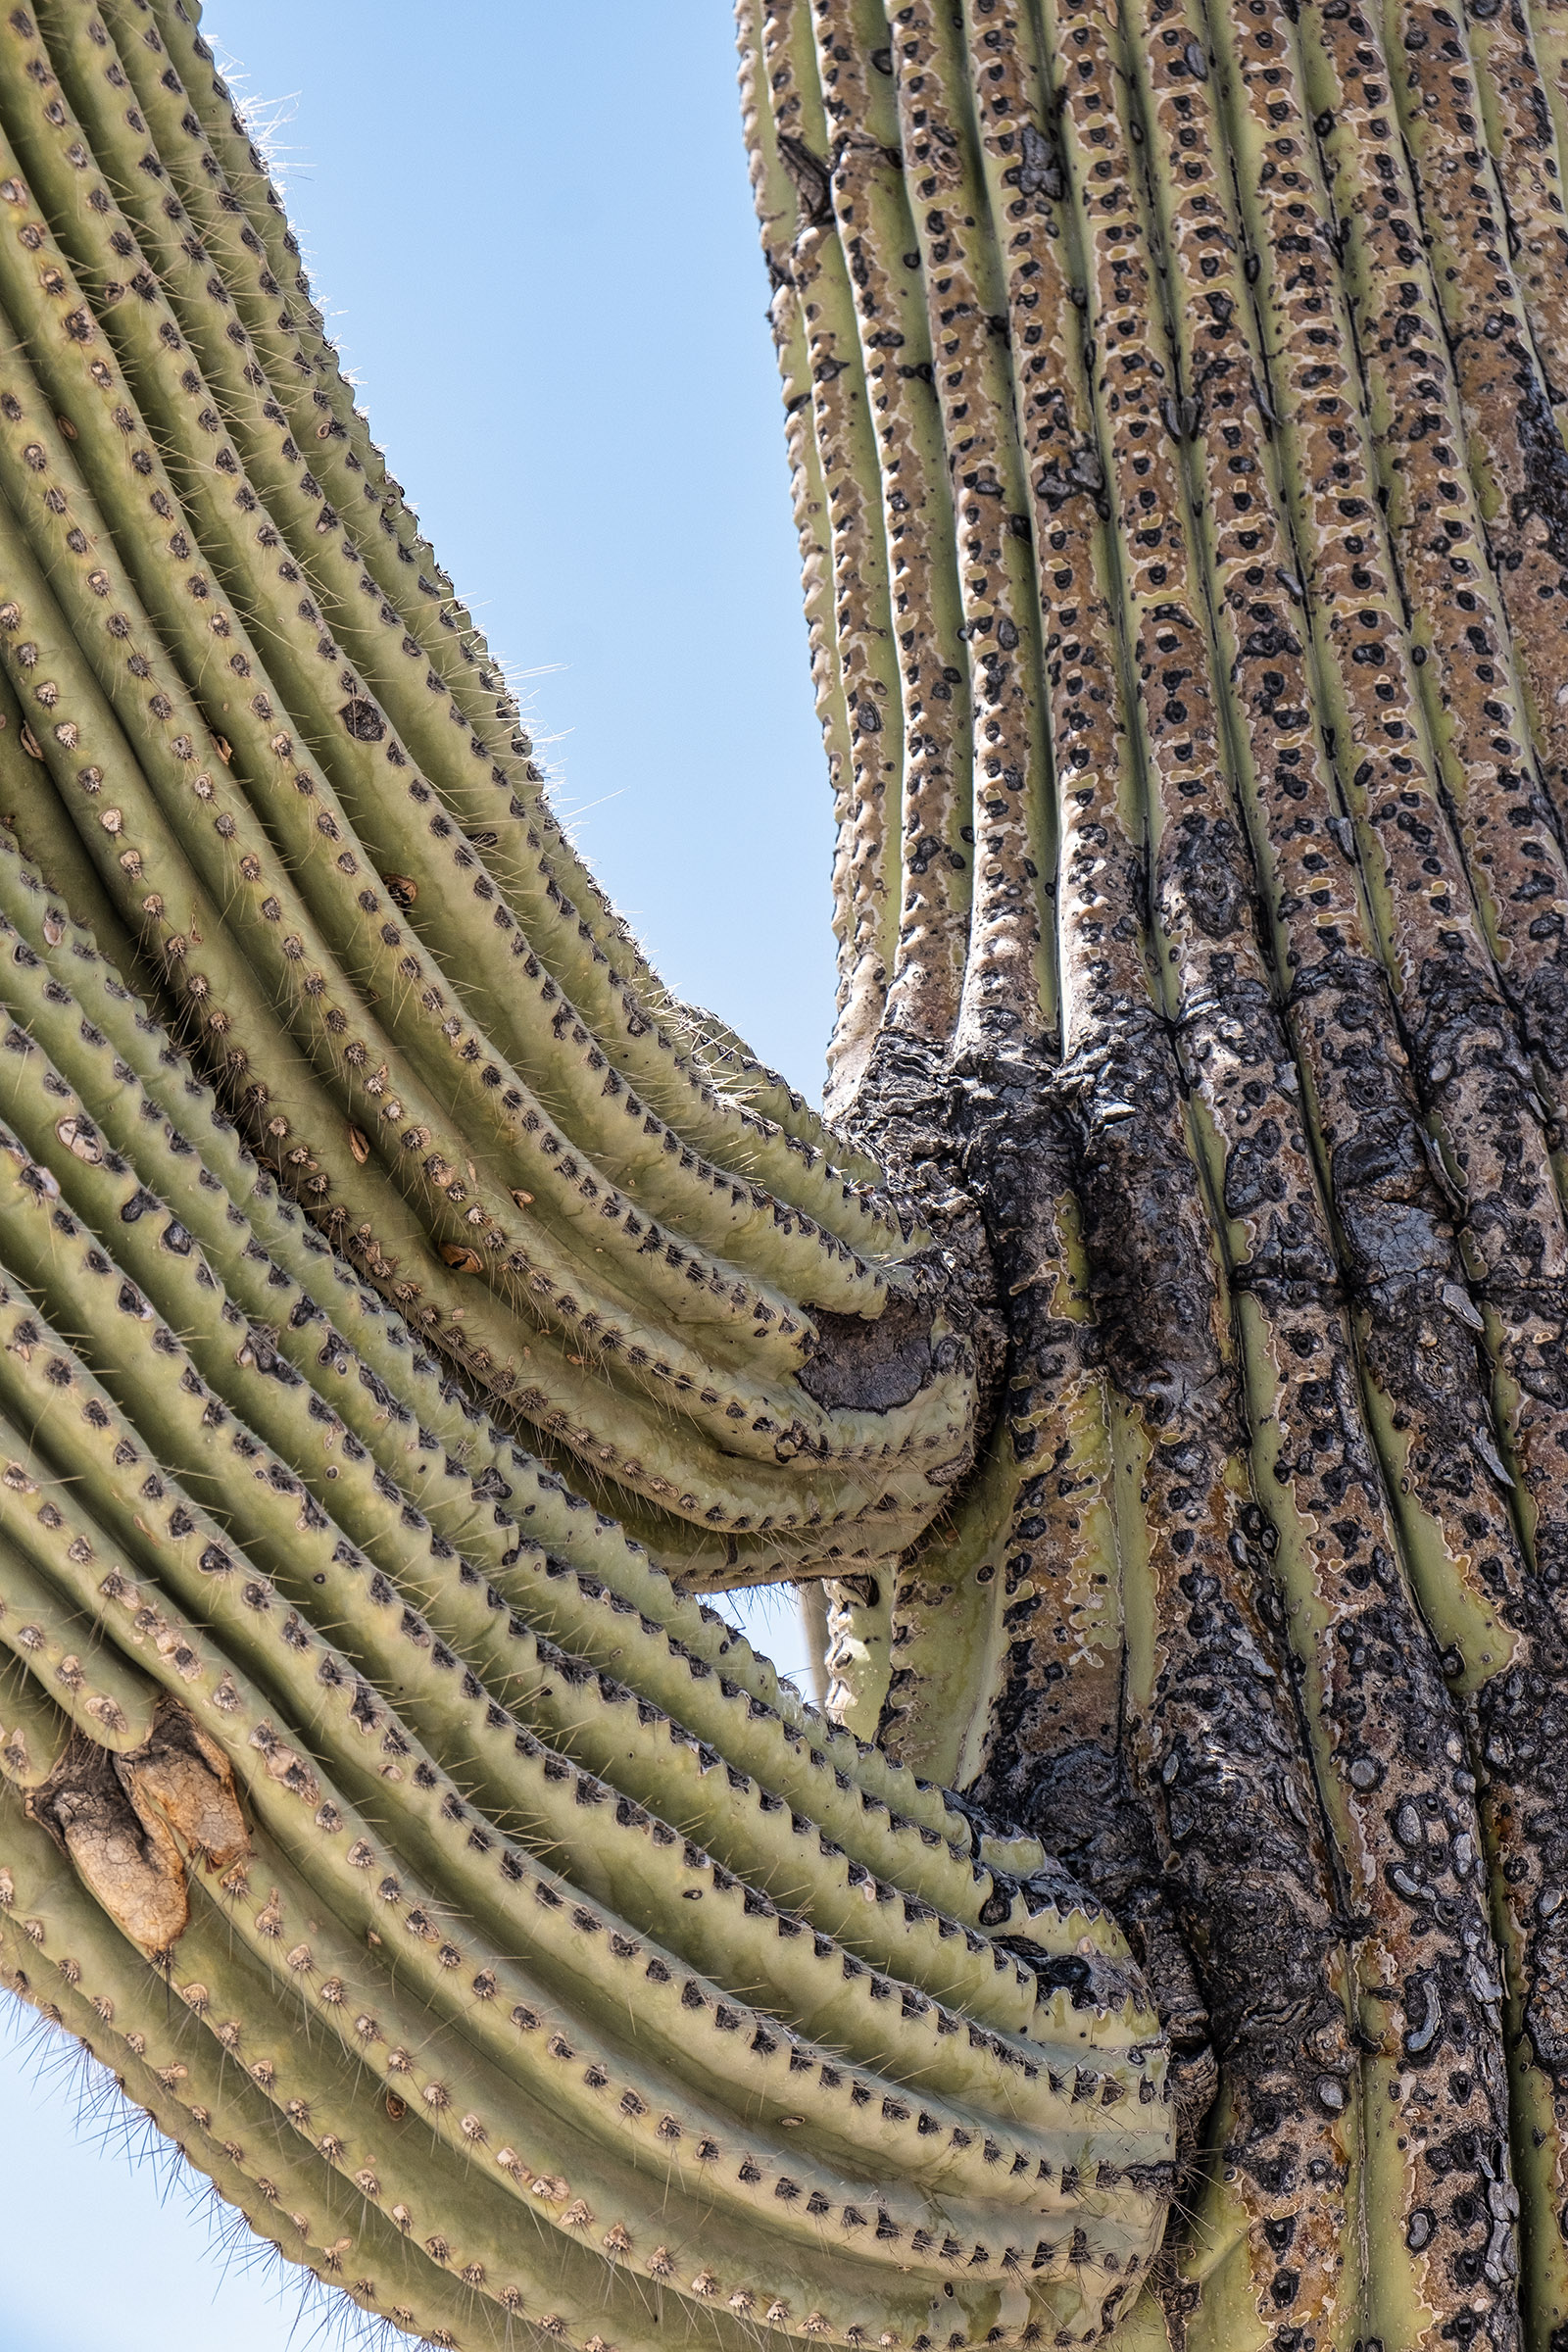 A Saguaro cactus closeup...